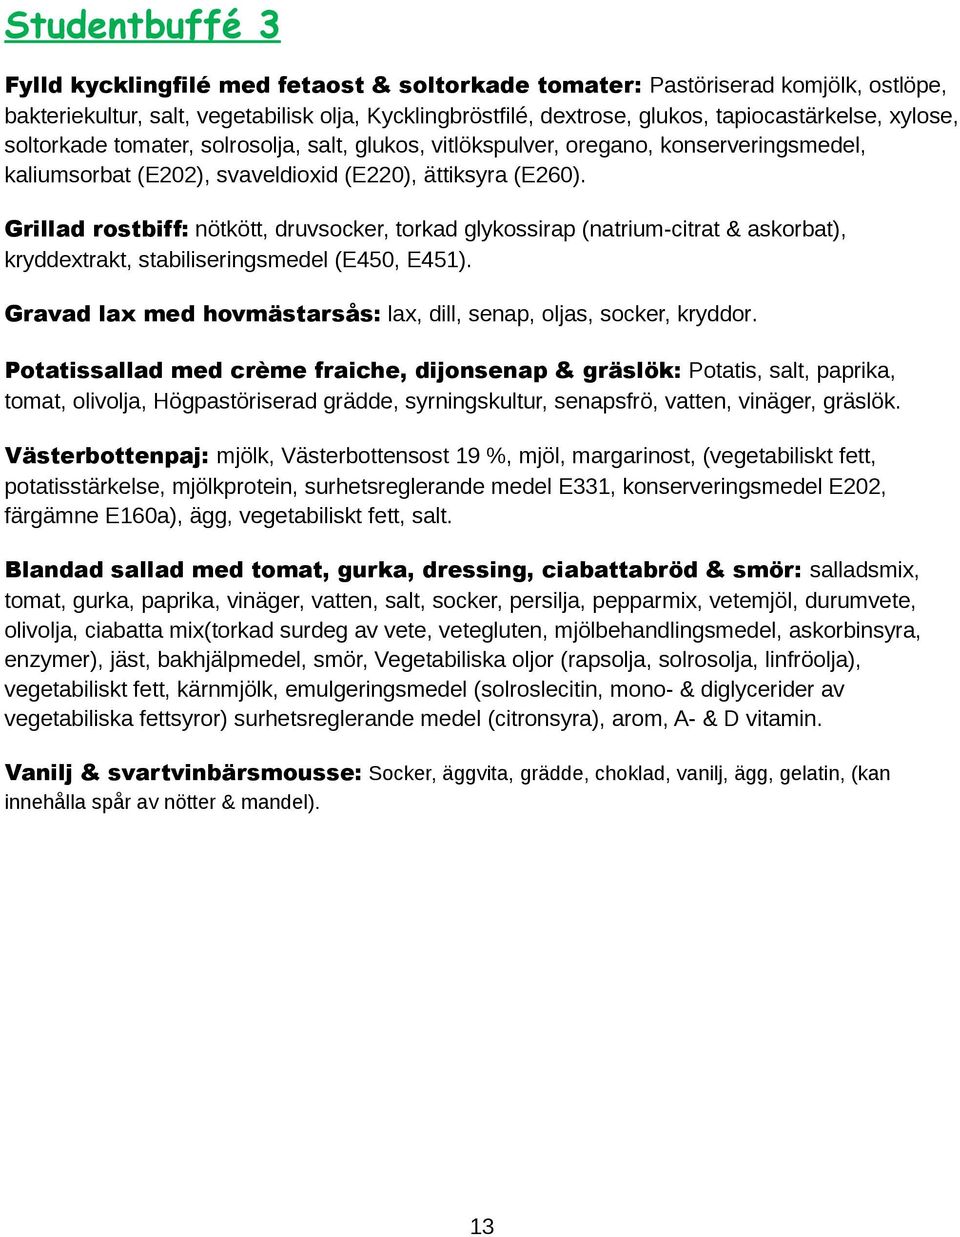 Grillad rostbiff: nötkött, druvsocker, torkad glykossirap (natrium-citrat & askorbat), kryddextrakt, stabiliseringsmedel (E450, E451).